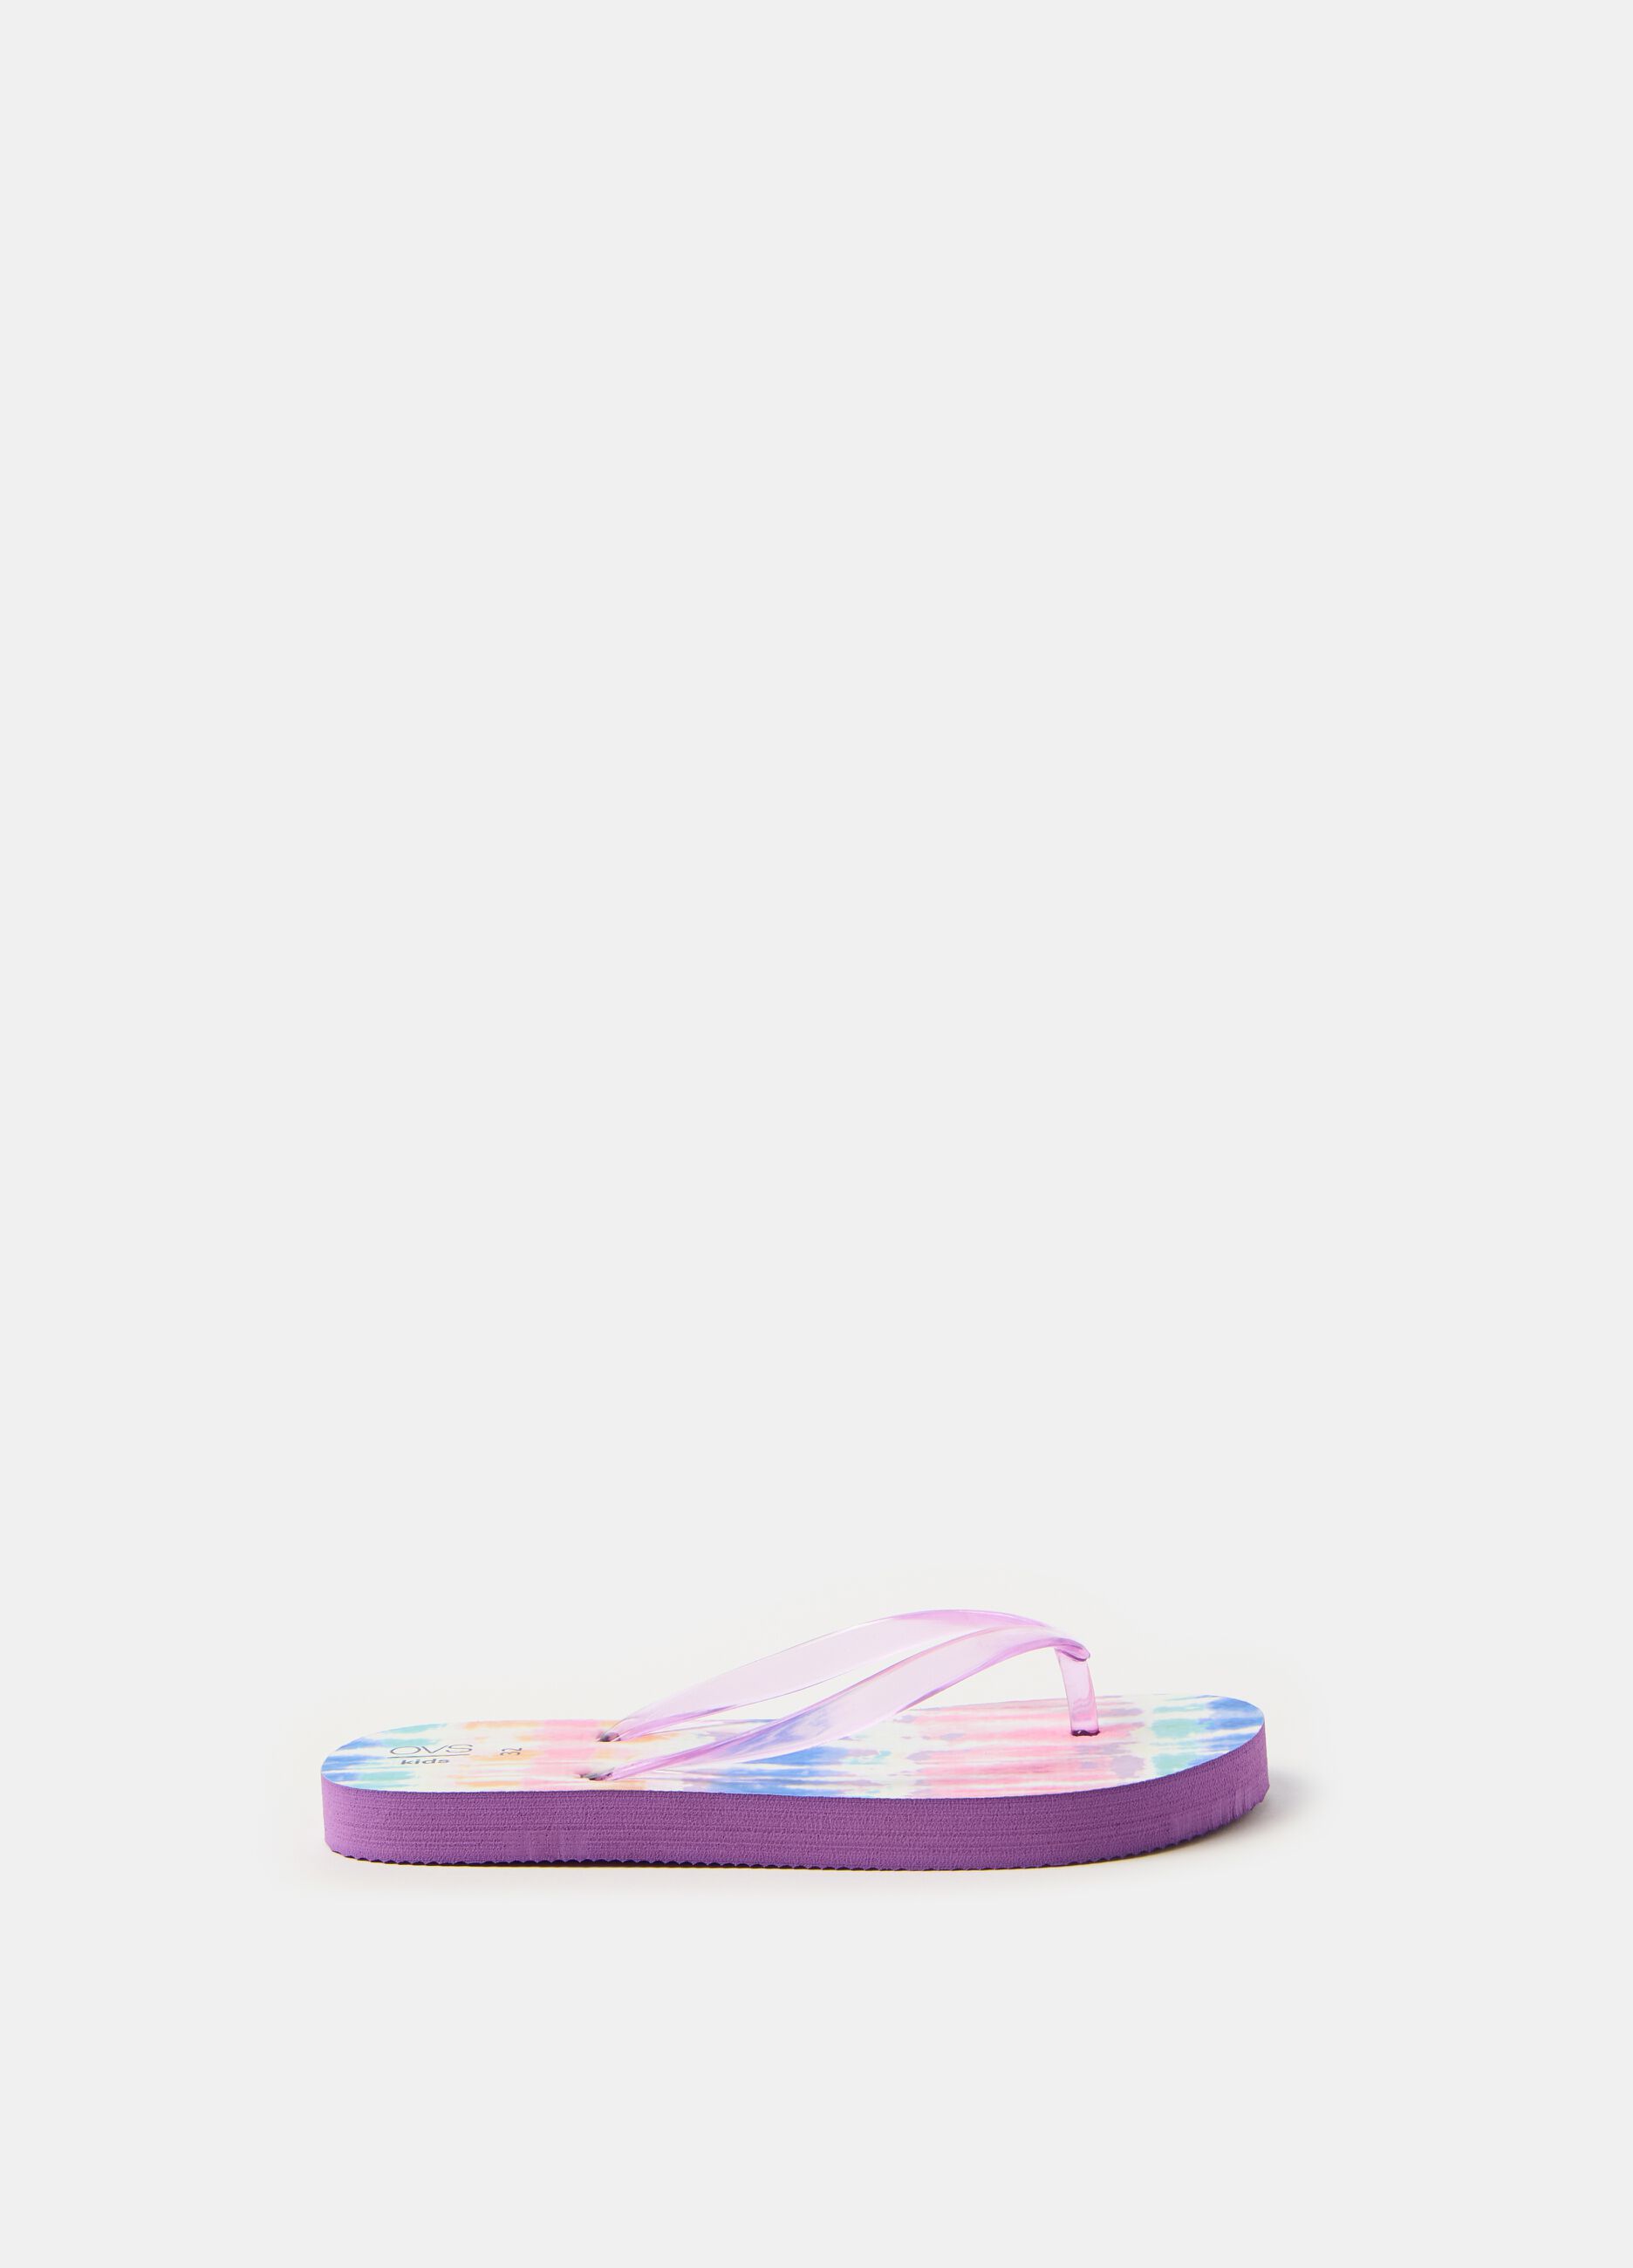 Flip flops with tie-dye pattern